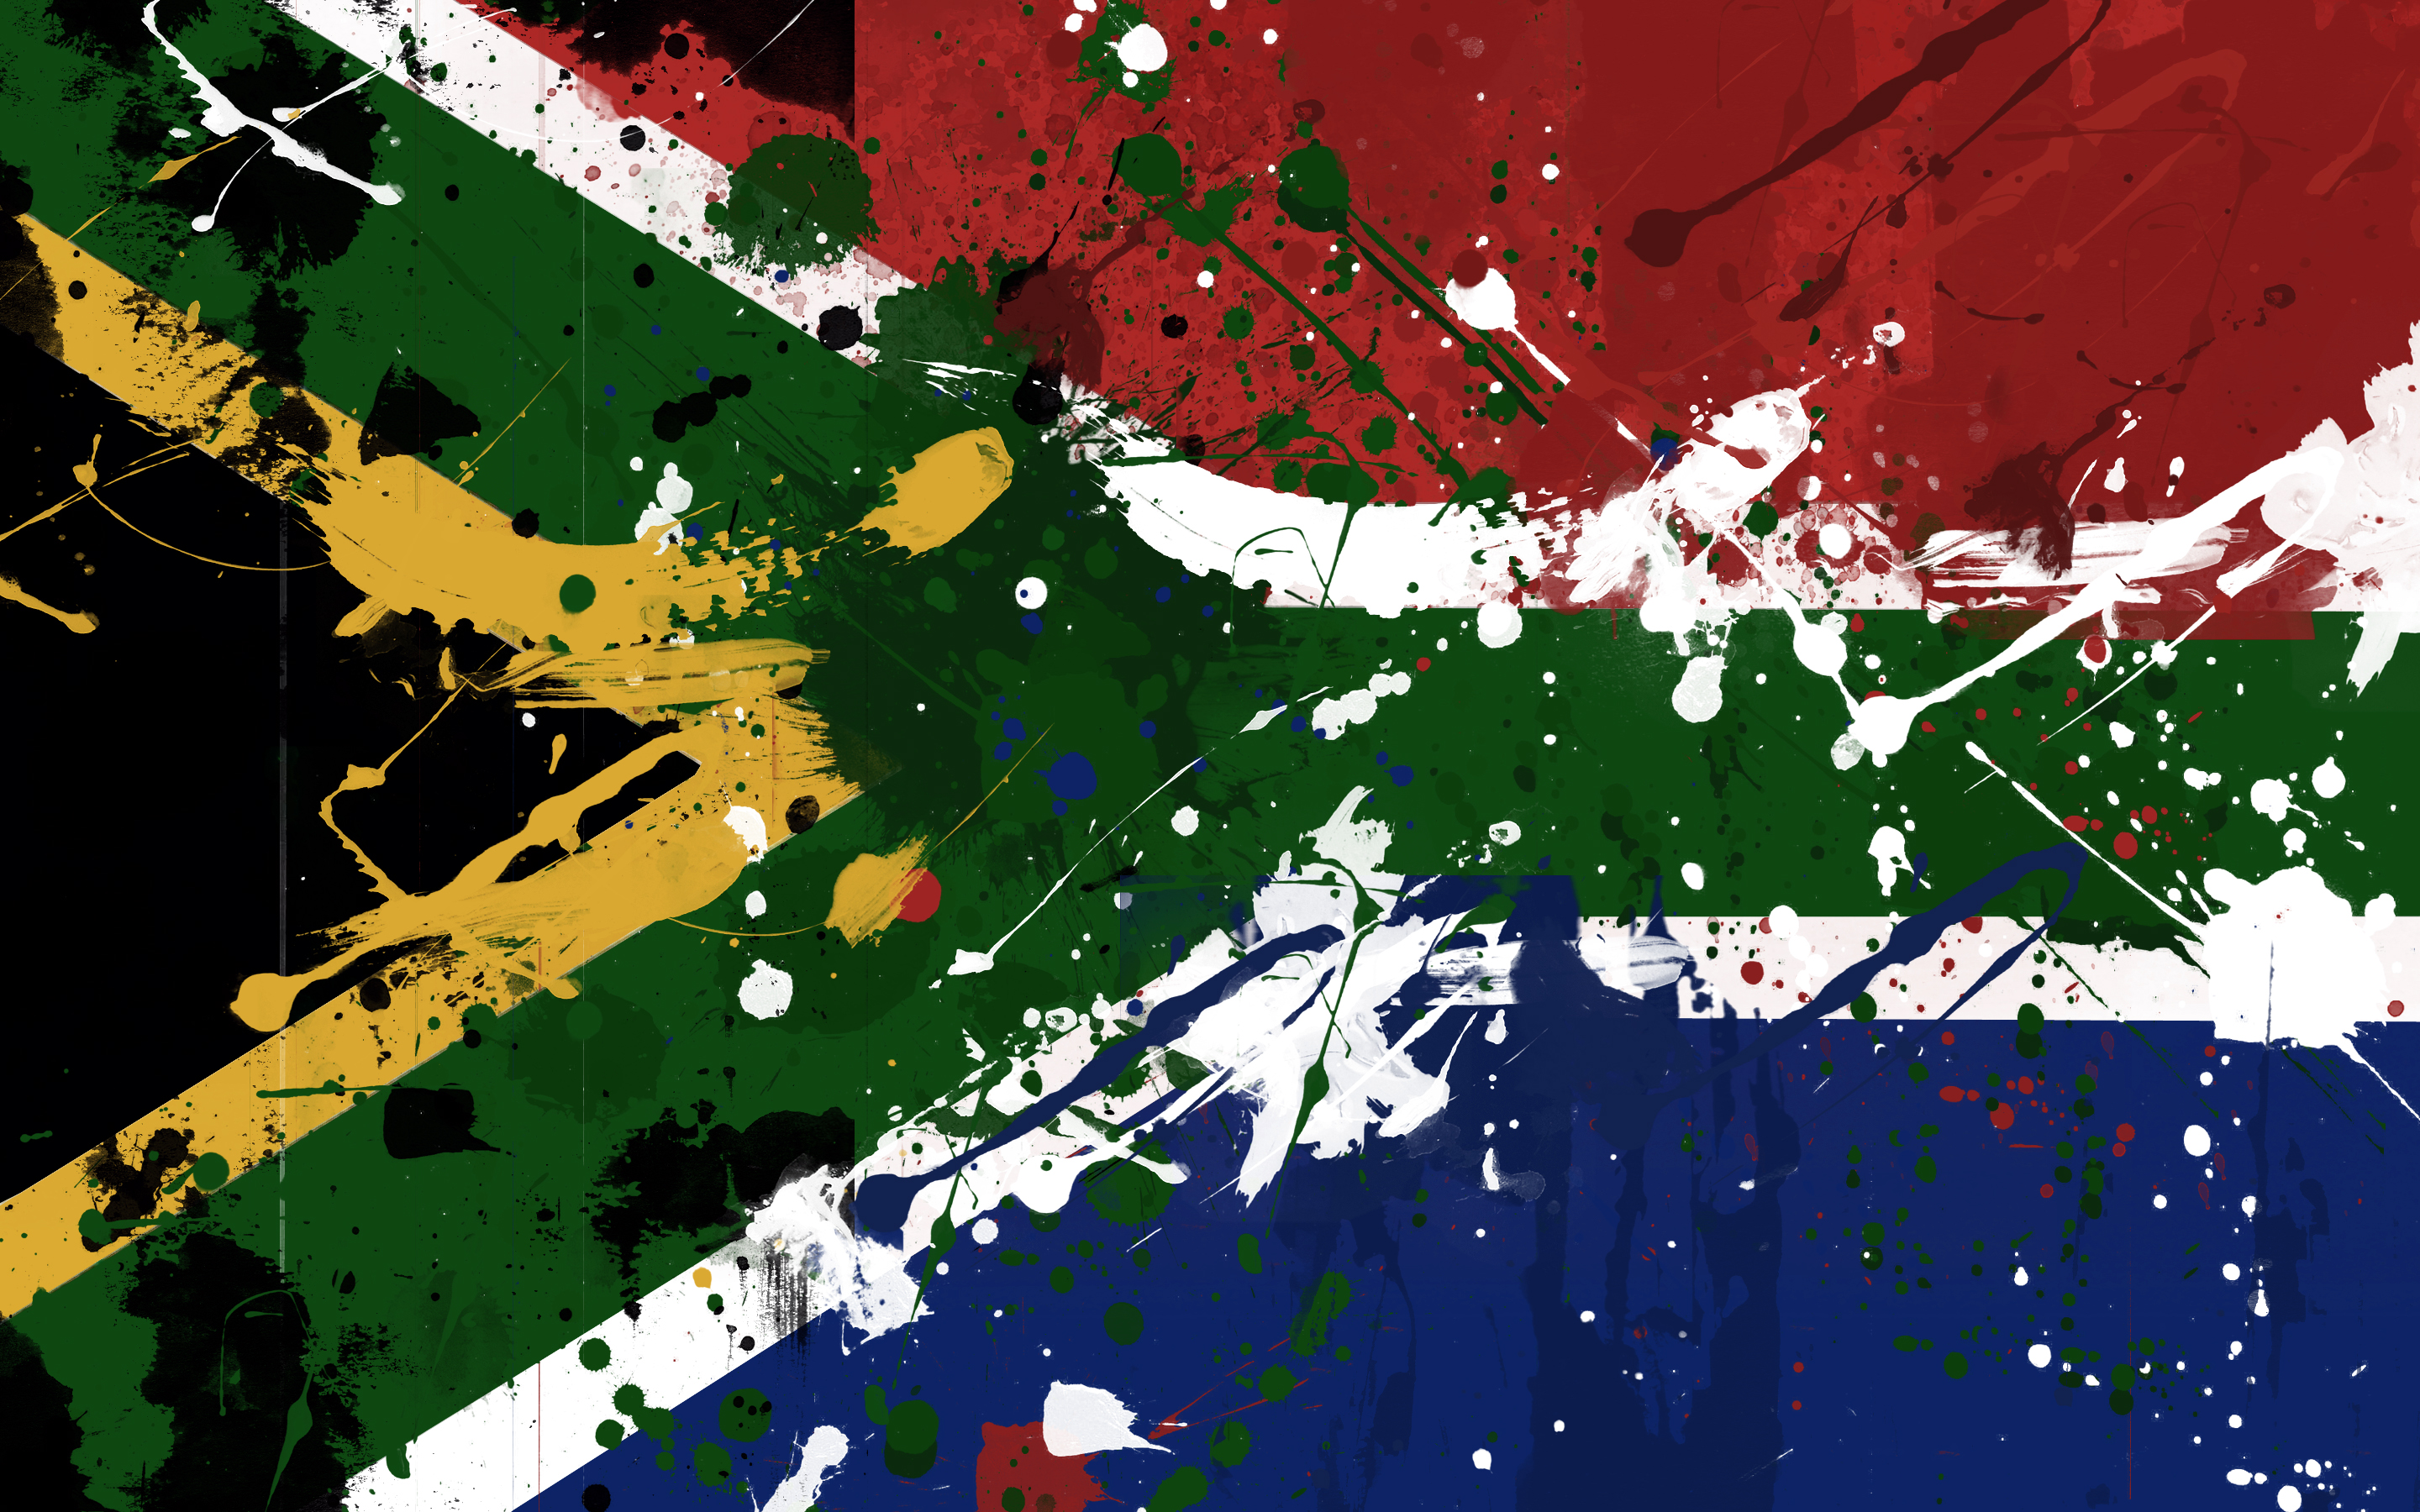 South Africa - desktop wallpaper